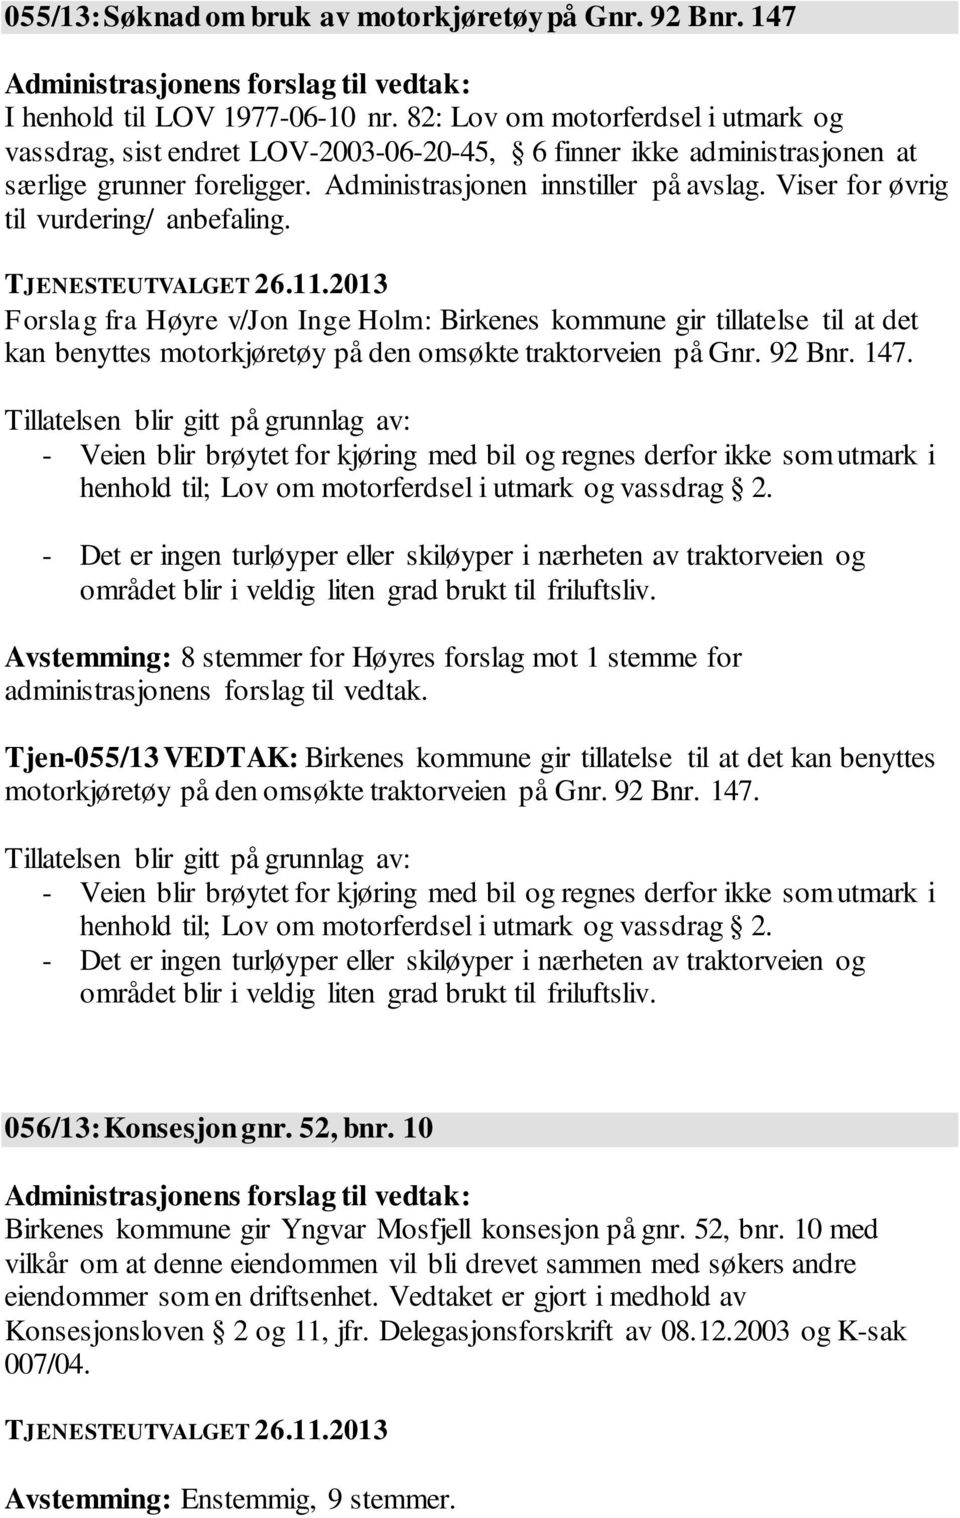 Viser for øvrig til vurdering/ anbefaling. Forslag fra Høyre v/jon Inge Holm: Birkenes kommune gir tillatelse til at det kan benyttes motorkjøretøy på den omsøkte traktorveien på Gnr. 92 Bnr. 147.